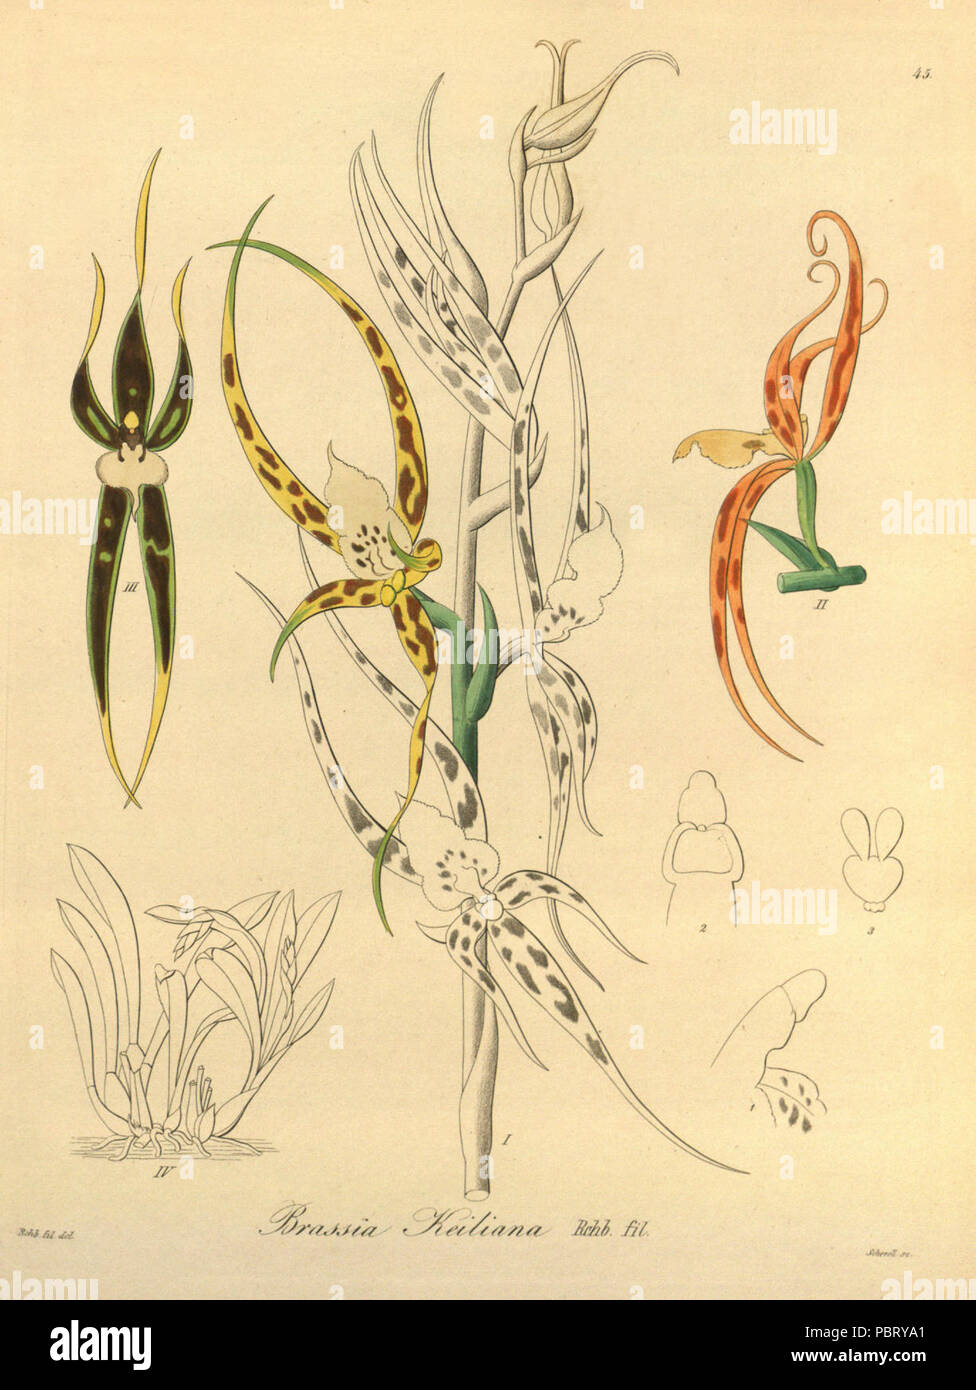 Ada keiliana (as Brassia keiliana) - Xenia vol 1 pl 45 (1858). Stock Photo